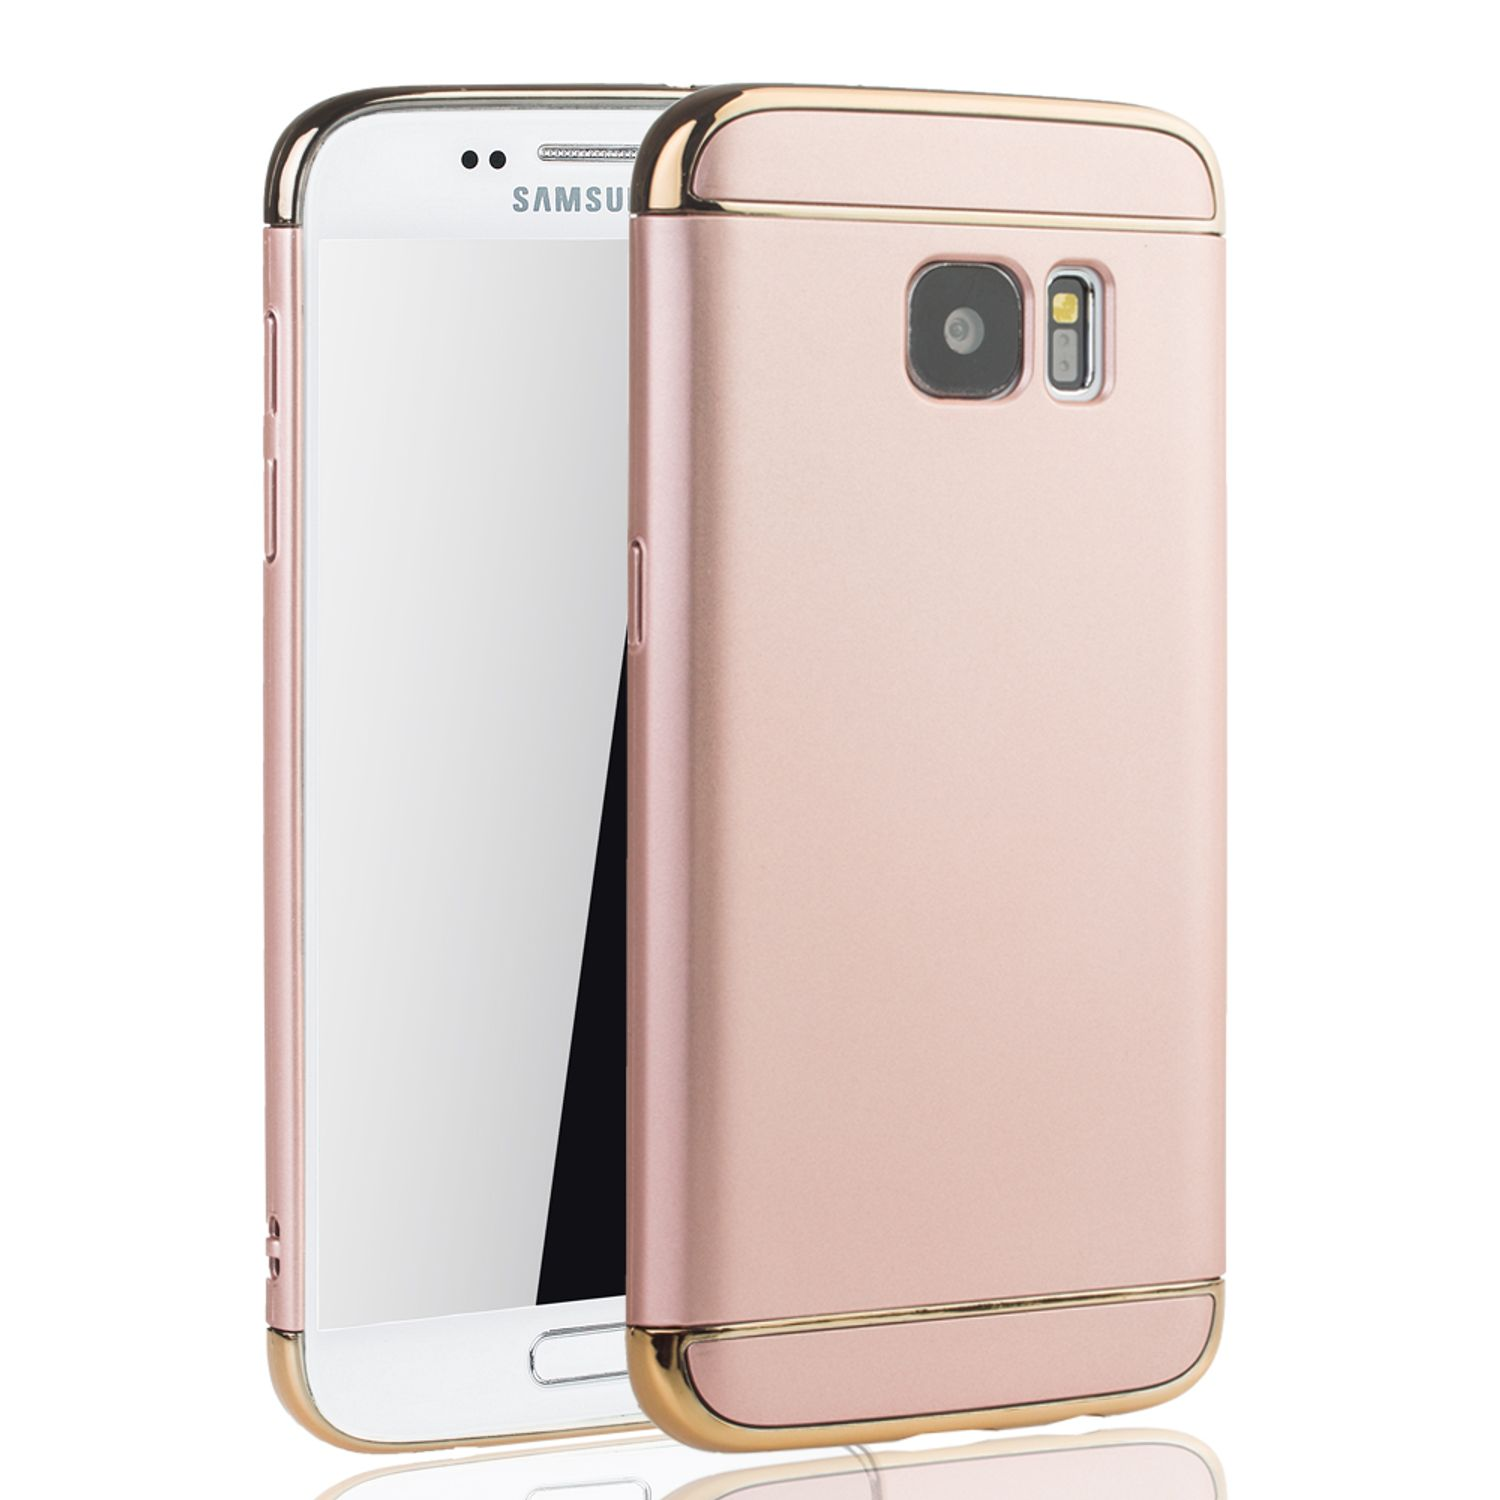 KÖNIG DESIGN Galaxy S7, Rosa Samsung, Backcover, Schutzhülle